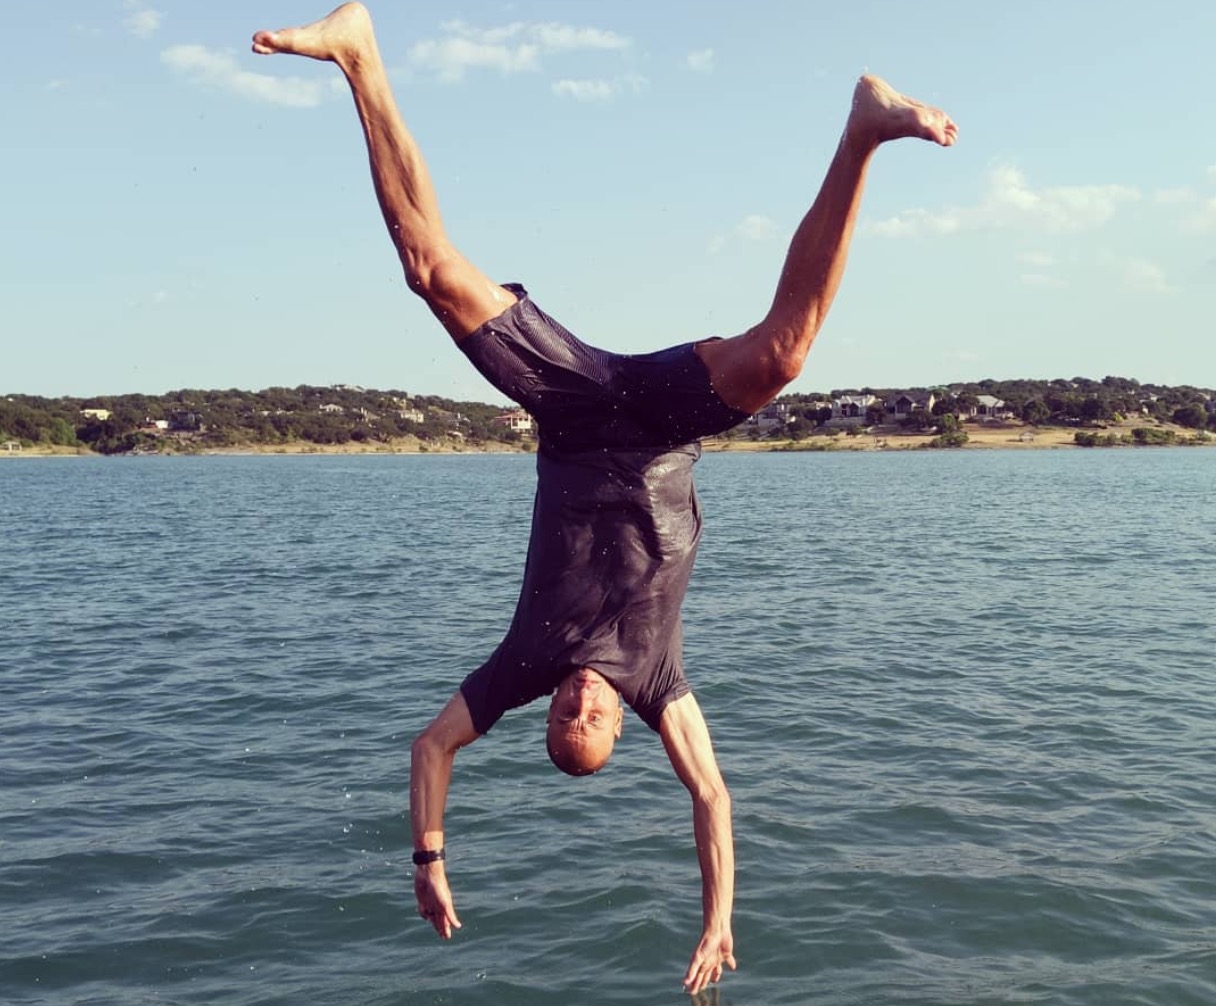 吉诺比利晒出翻身跳湖照片:孩子开学前享受一下德克萨斯